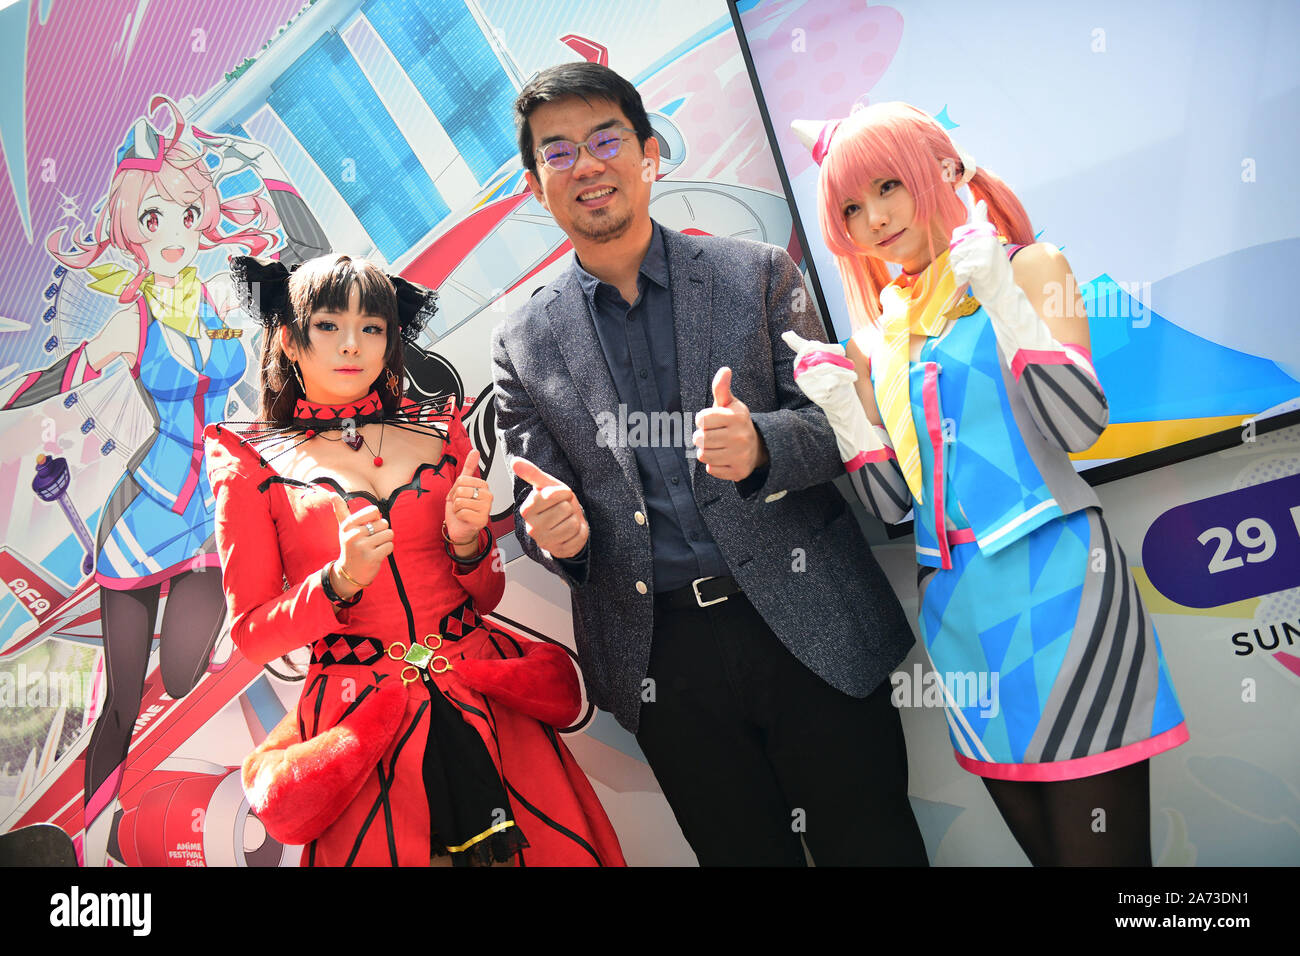 Singapour. 30Th Oct, 2019. Cosplayer Enako japonais (1e R) et singapouriens  cosplayeuse Rithe (1re L) participer à la C3 Festival anime l'Asie (MOF)  conférence de presse tenue à Singapour Changi le joyau